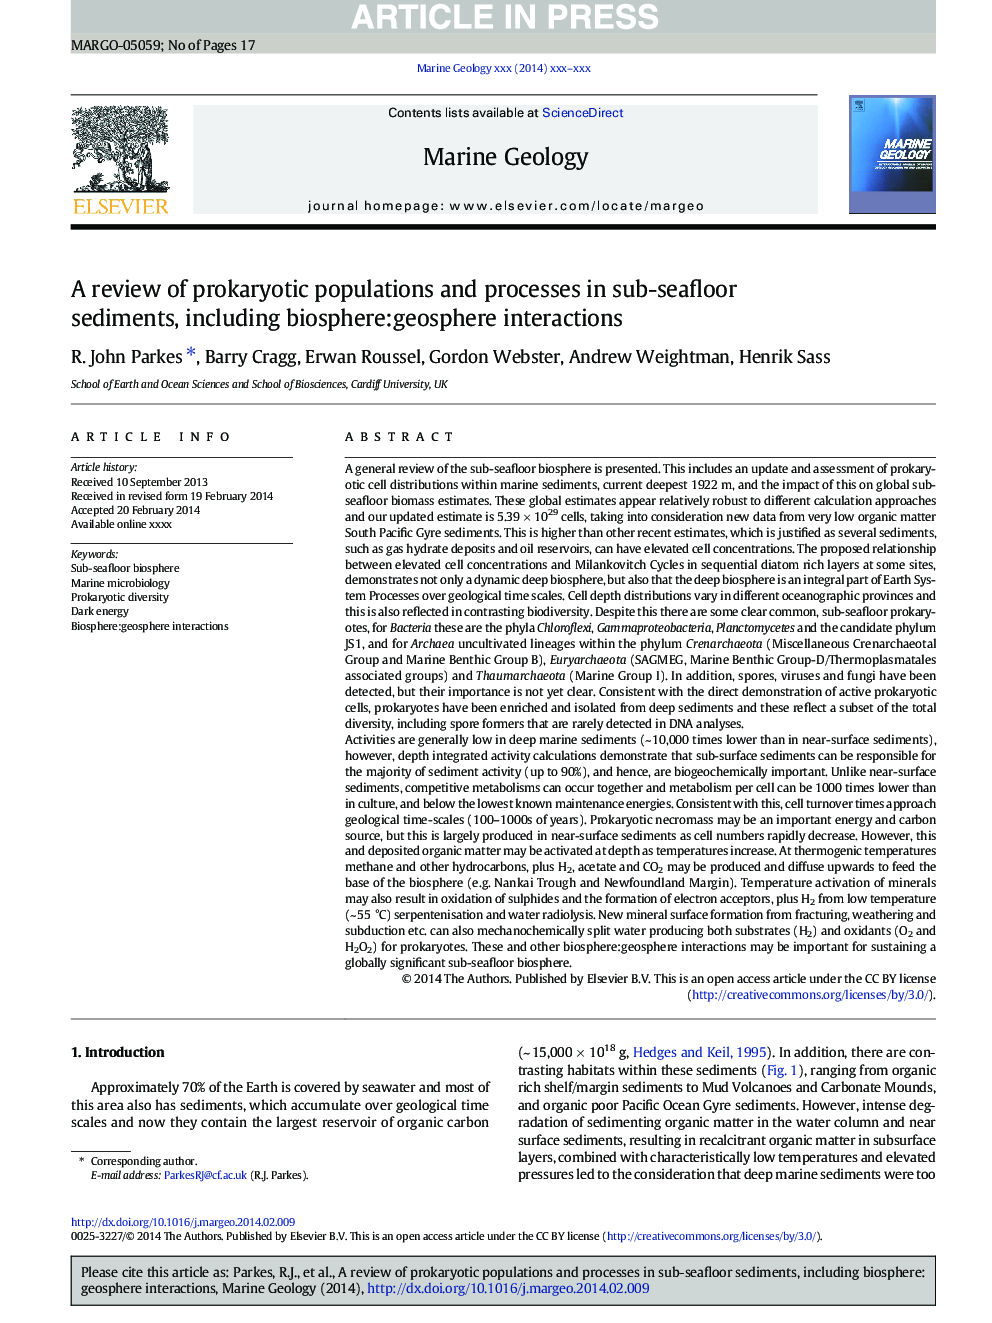 بررسی جمعیت و فرایندهای پروکریو در رسوبات زیر دریایی، از جمله بیوسفر: تعاملات ژئوسفر 